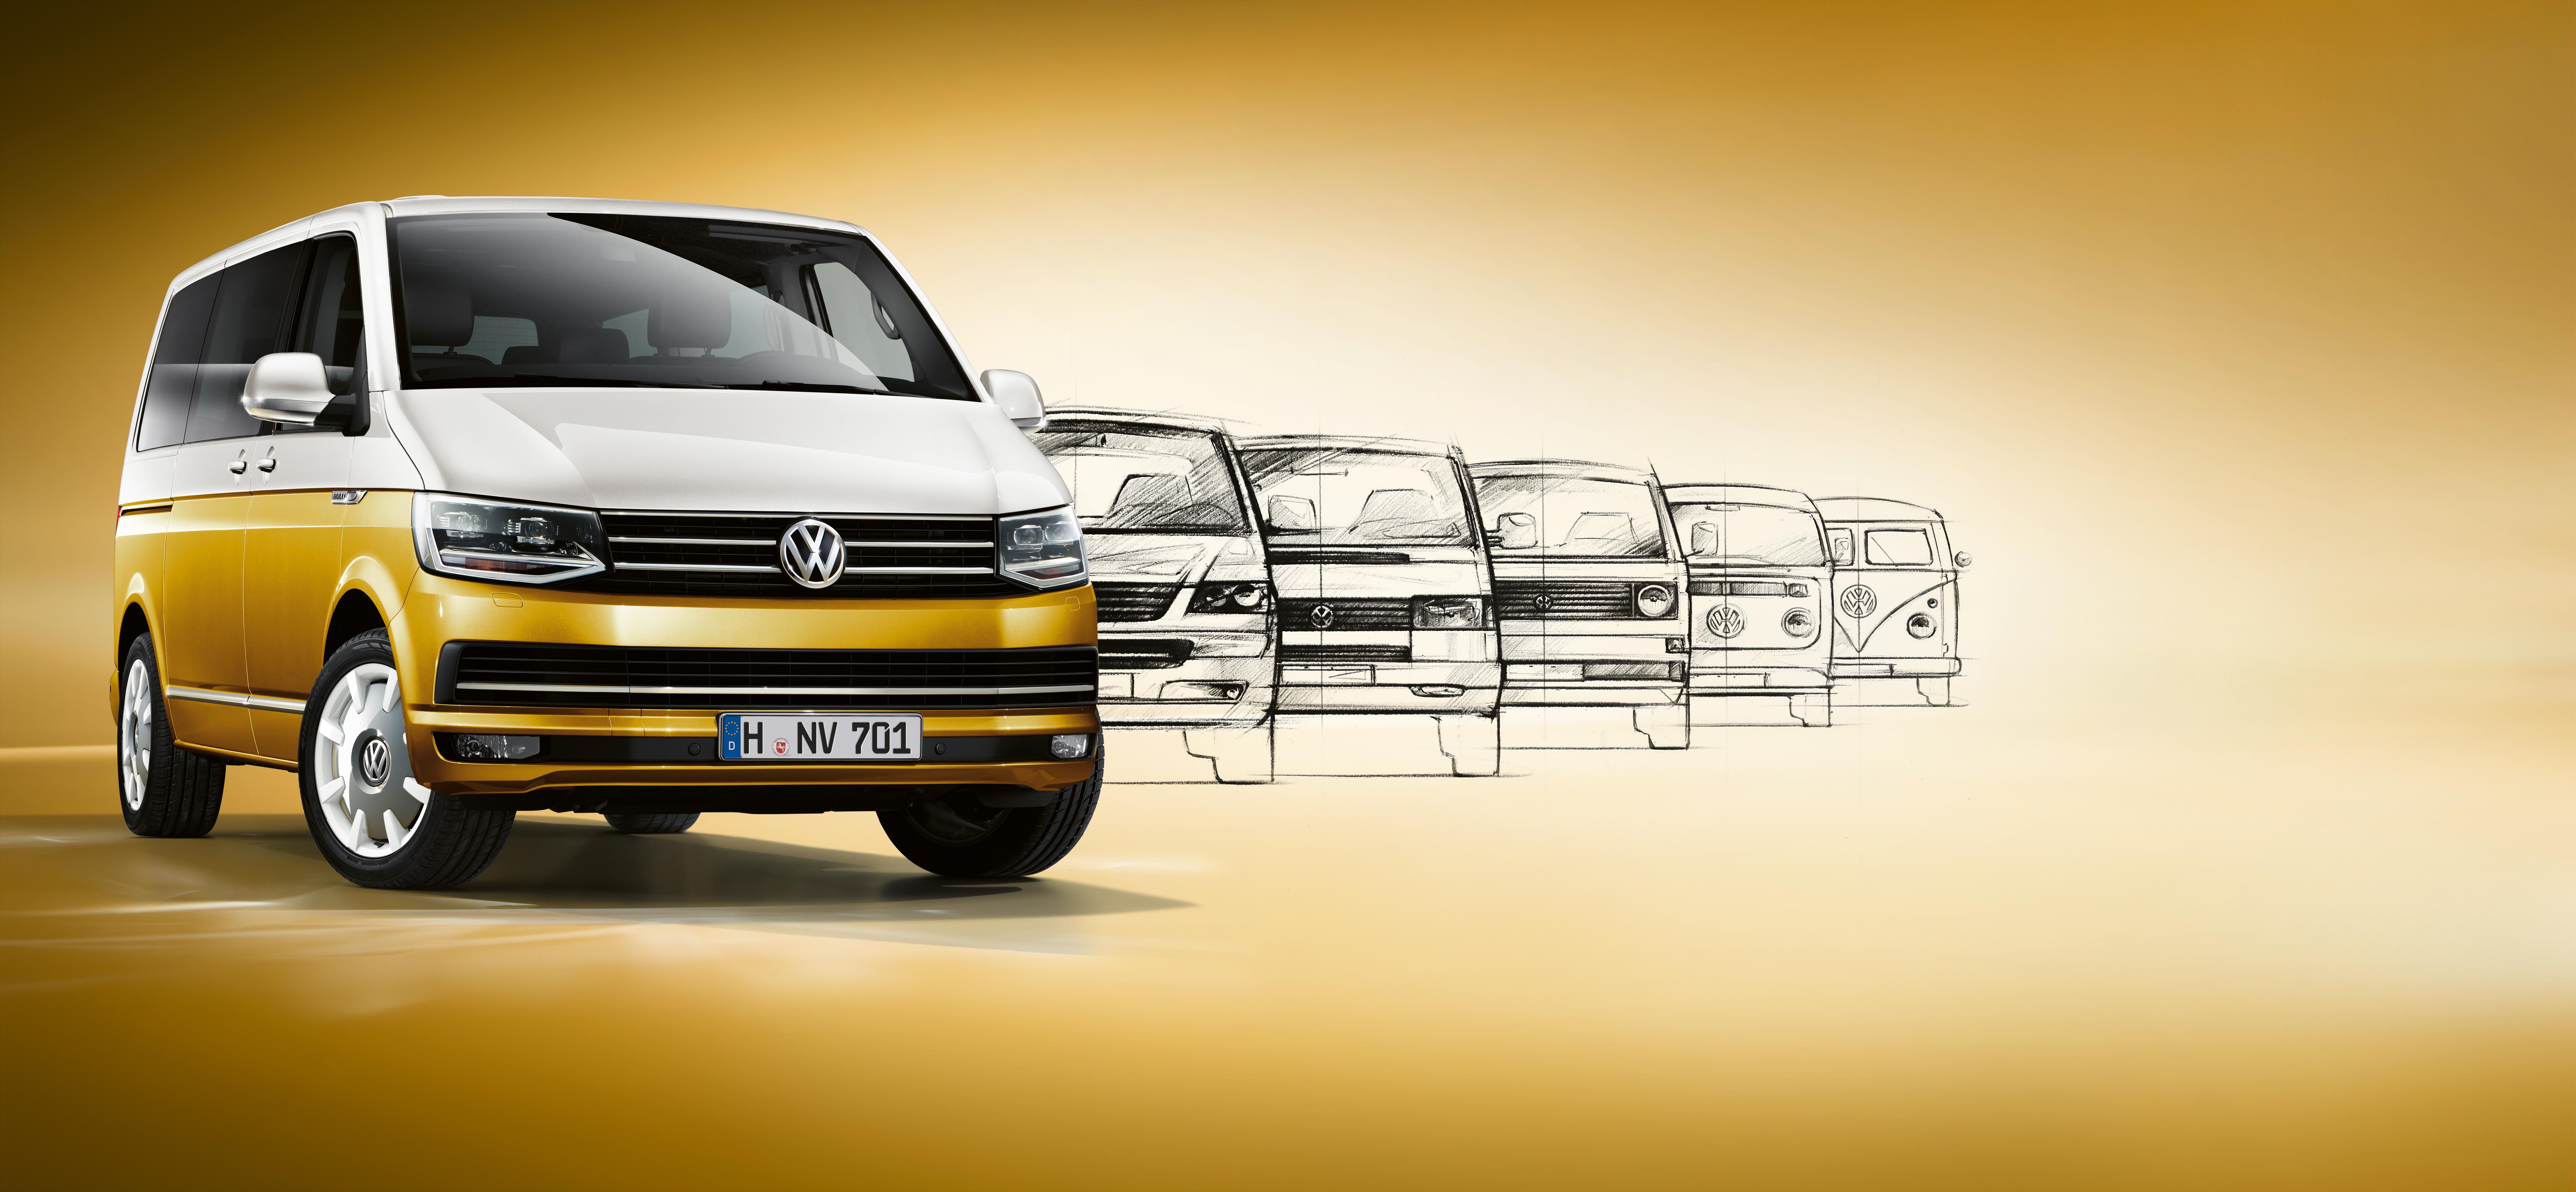 Edition anniversaire du VW T5 Multivan - Actus des marques